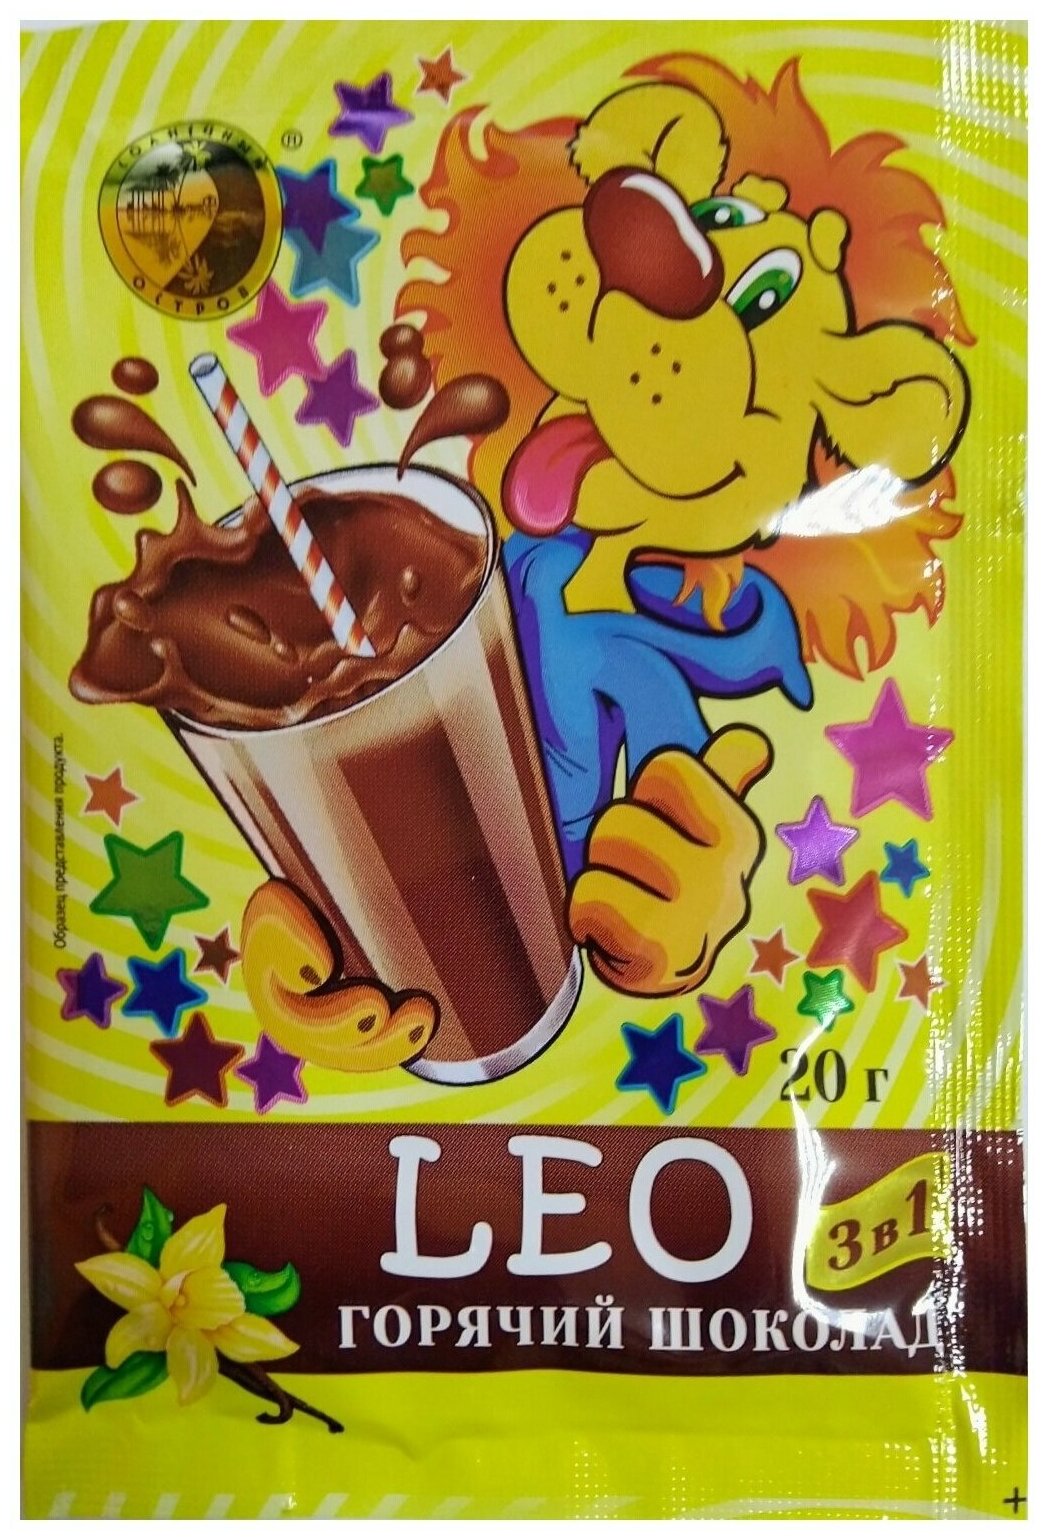 Горячий шоколад LEO 500 гр, 3 упак